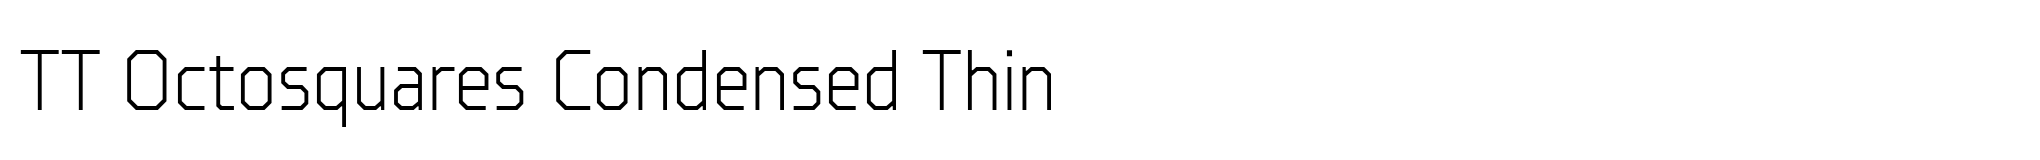 TT Octosquares Condensed Thin image